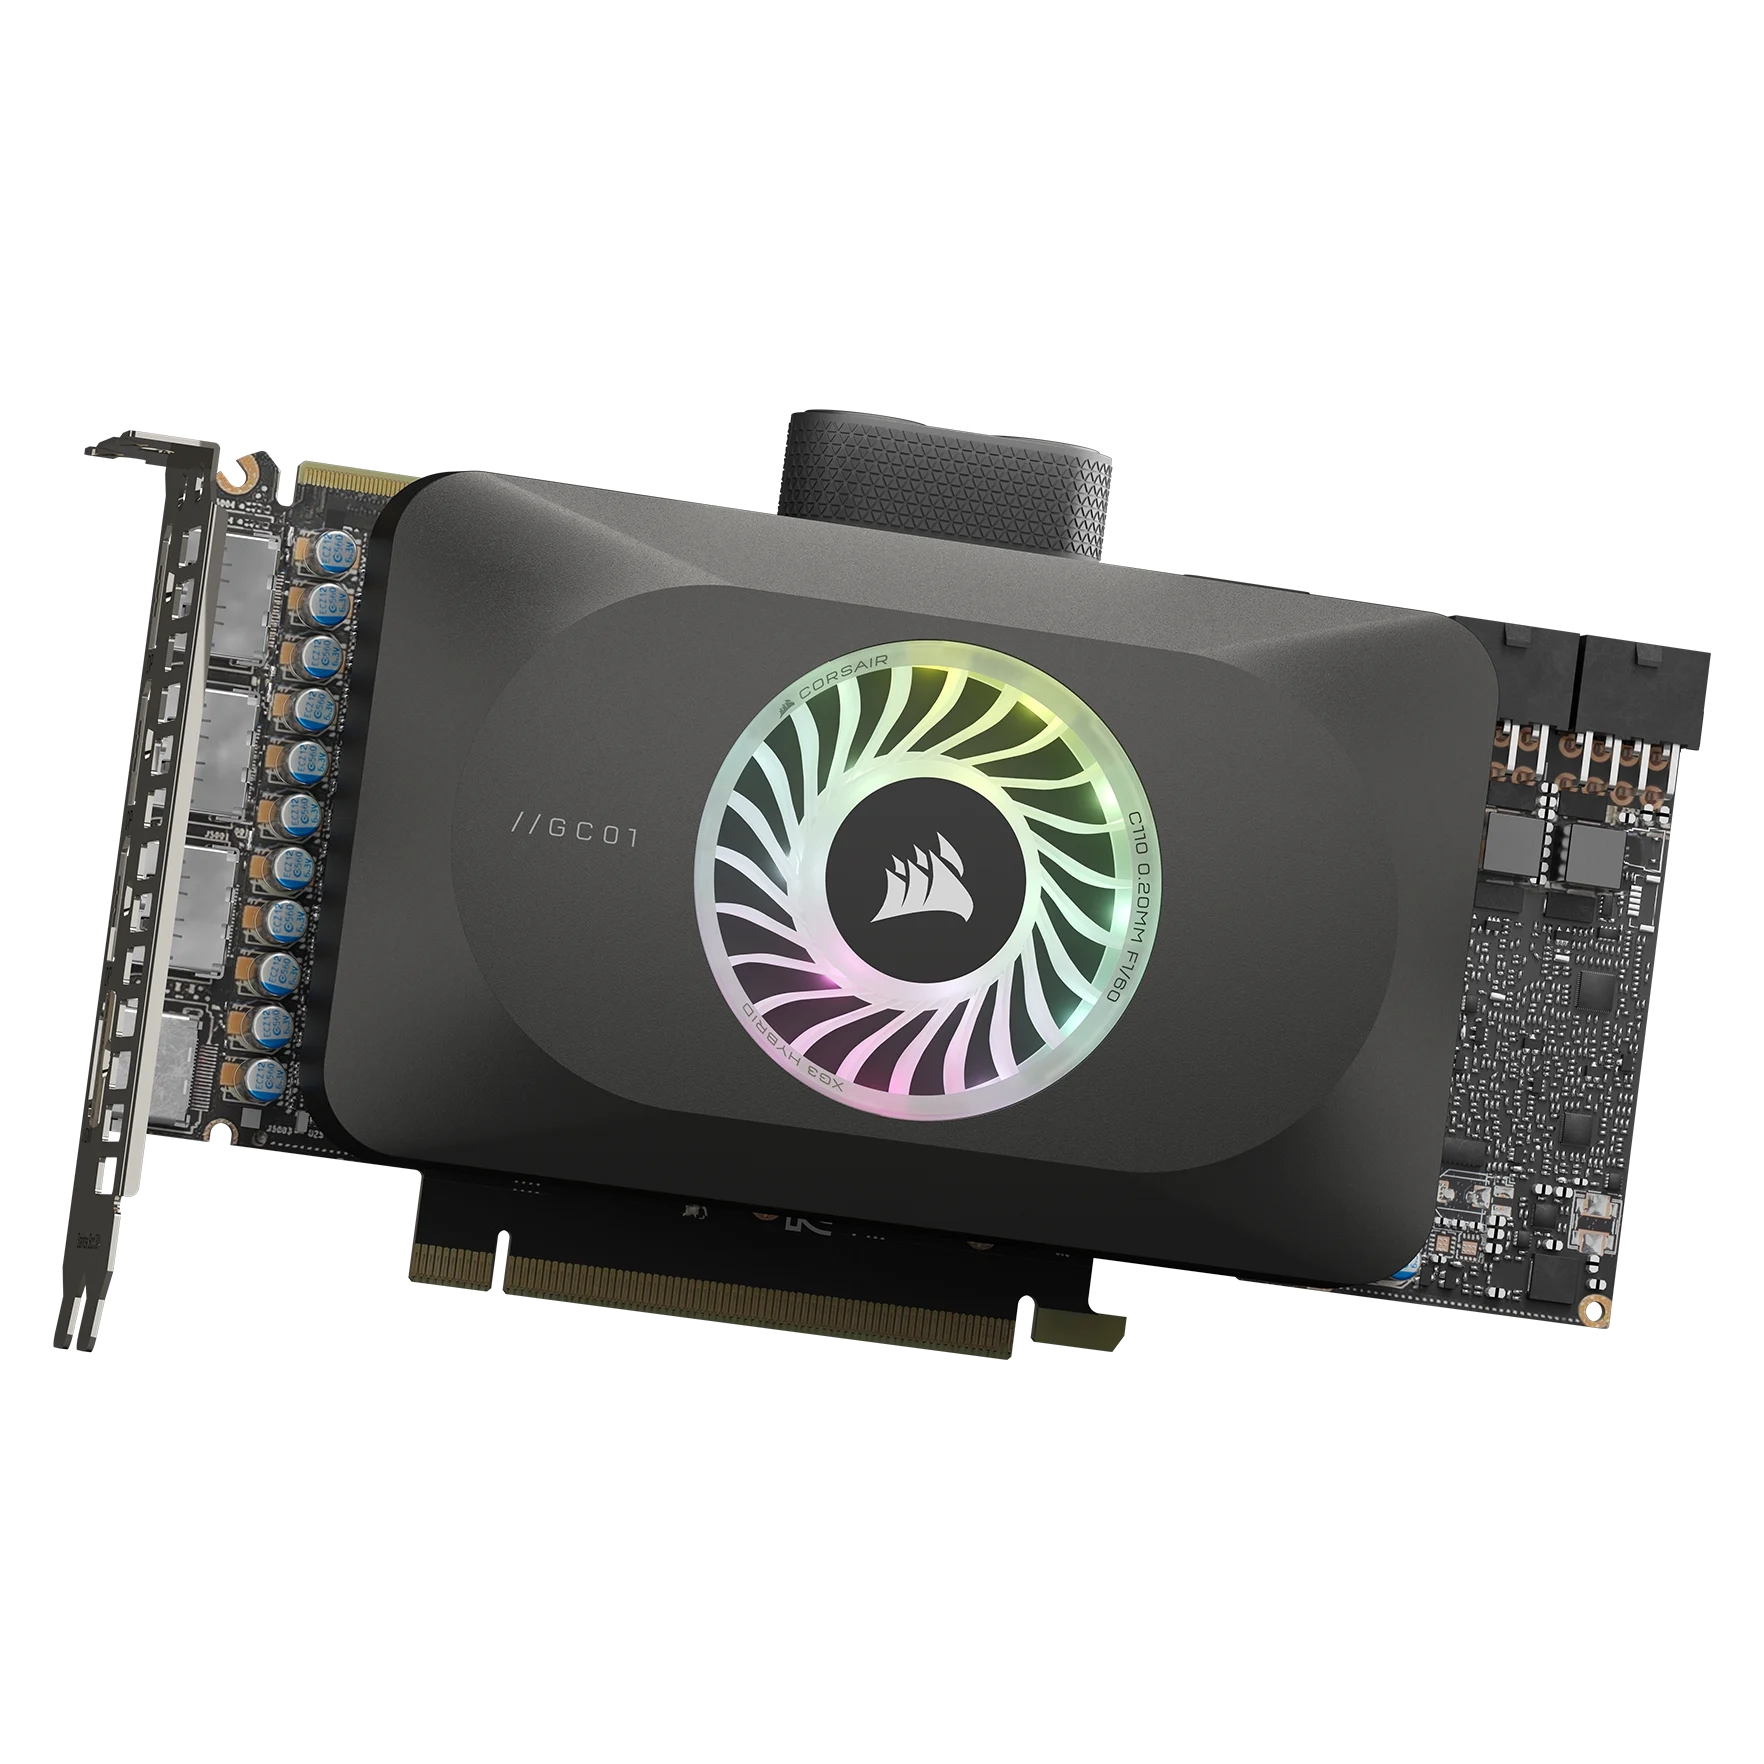 Corsair GPU water block XG3 RGB 7900XT